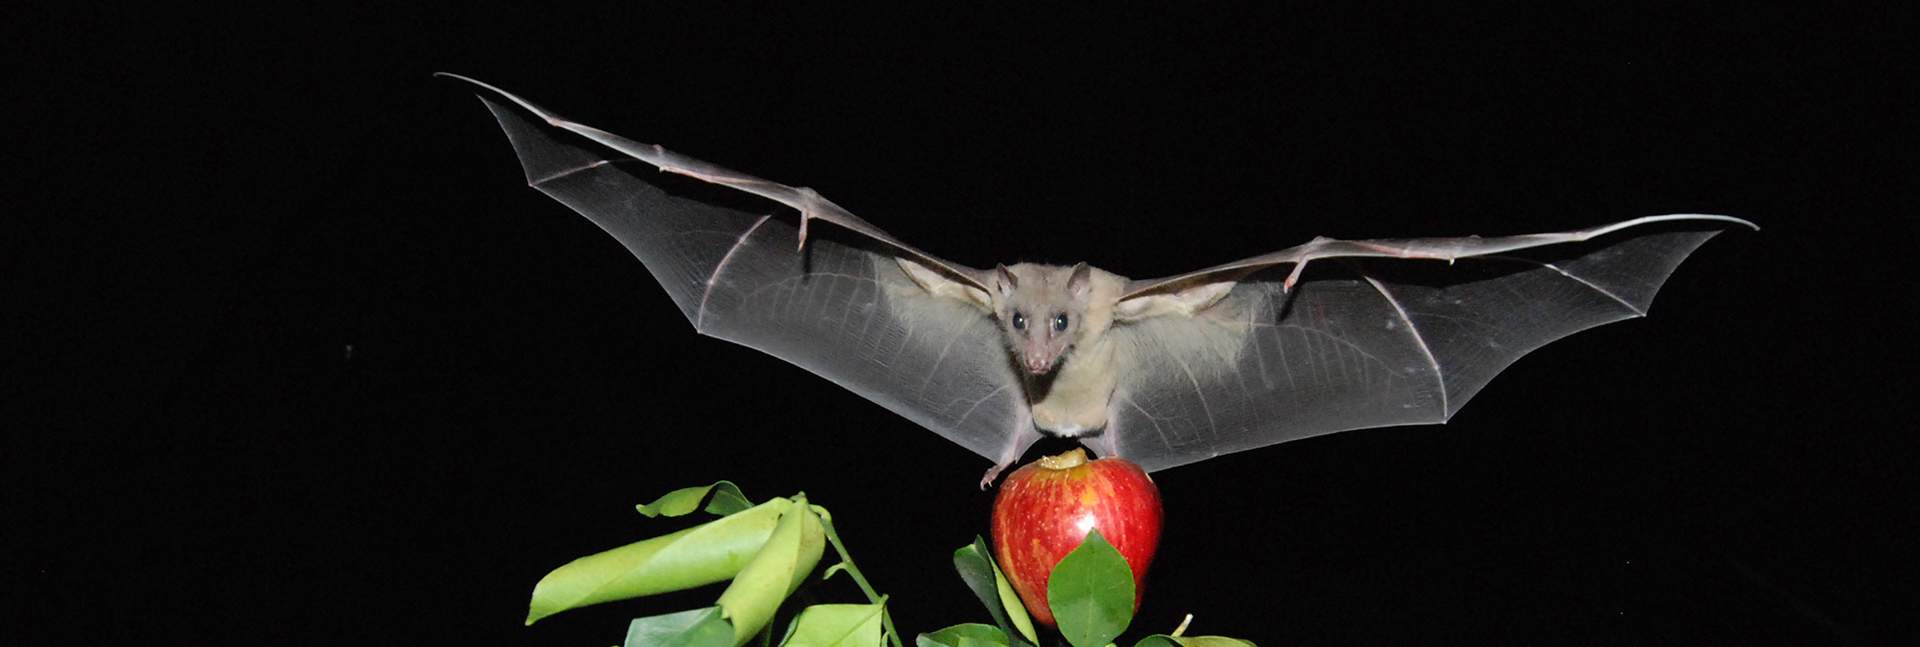 עטלף פירות מצוי. תצלום: יוסי יובל